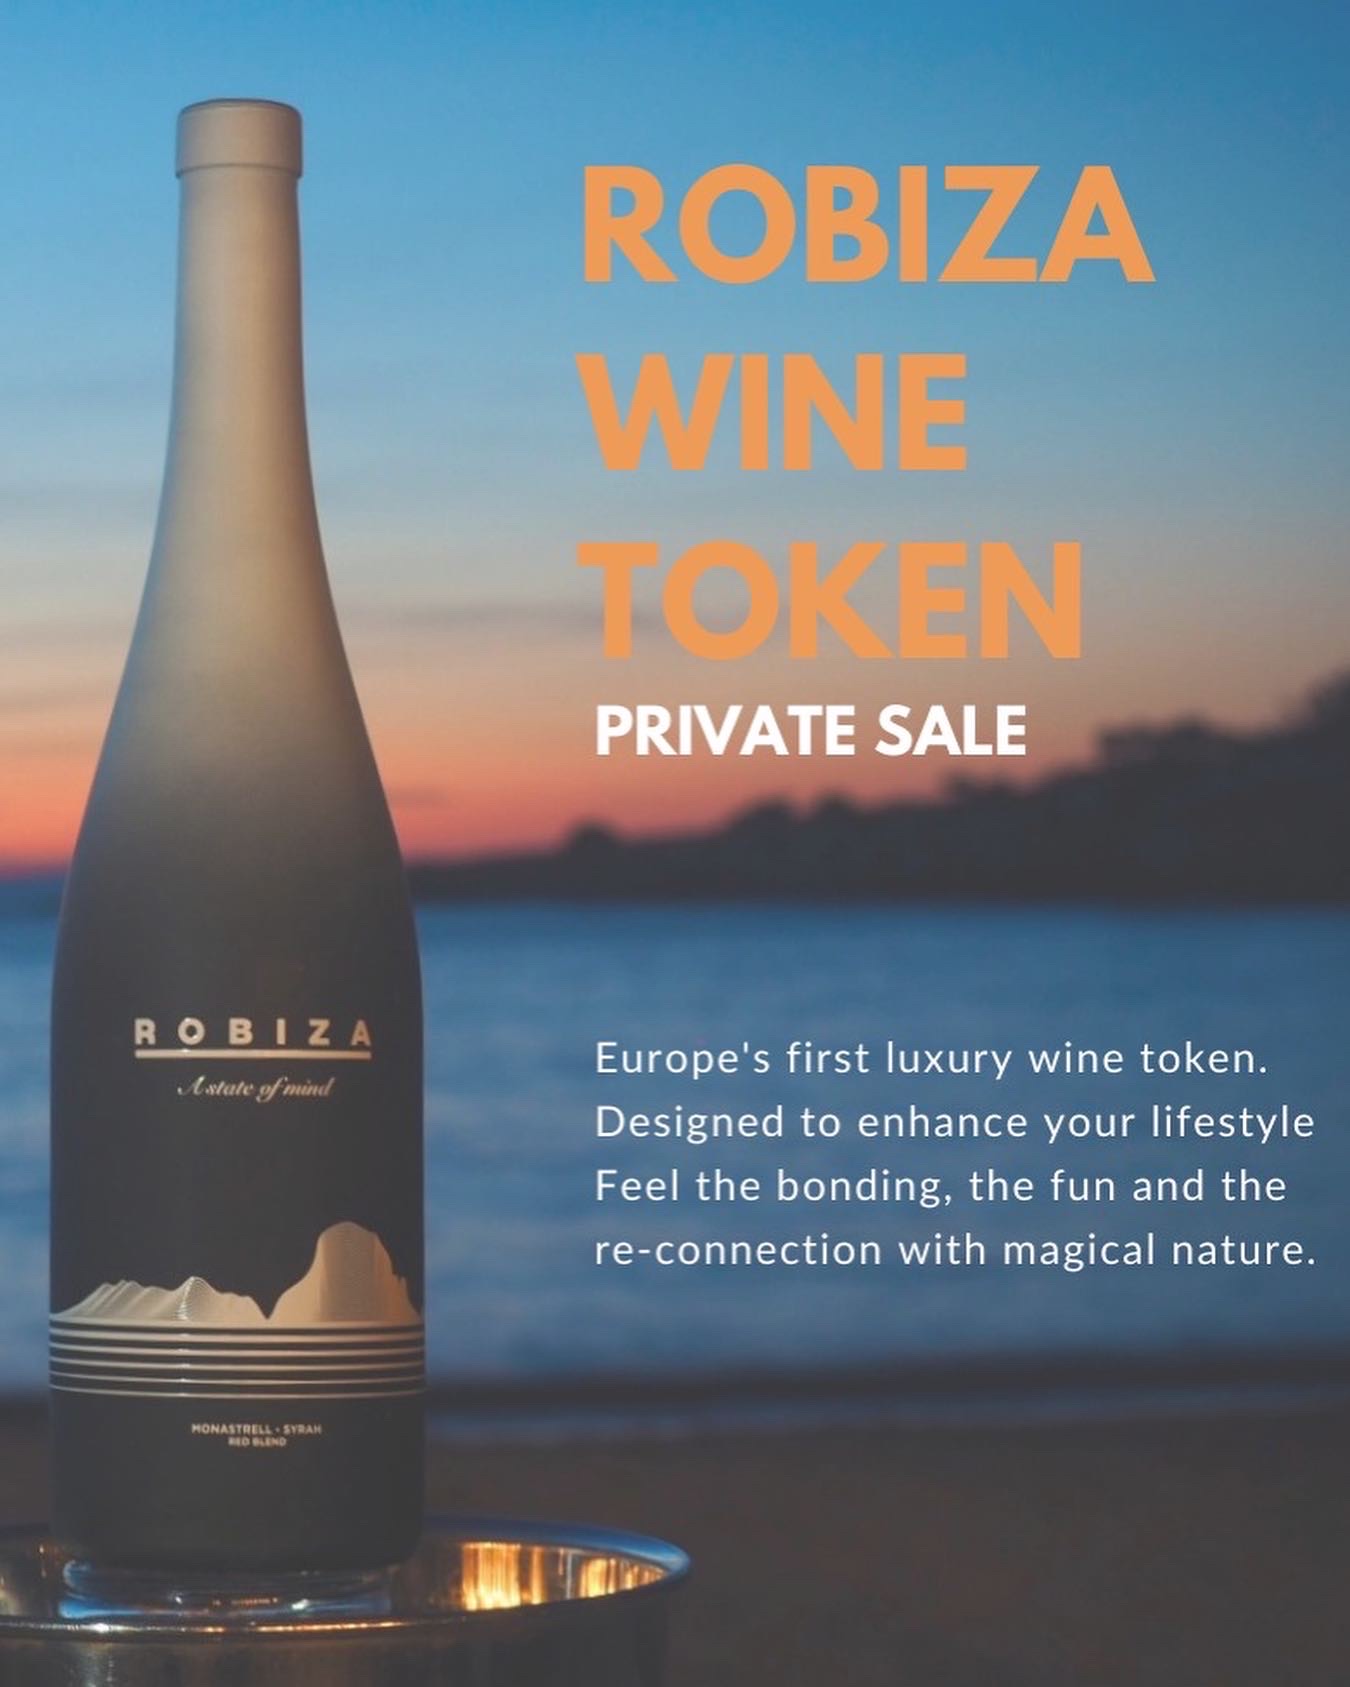 Robiza wine token